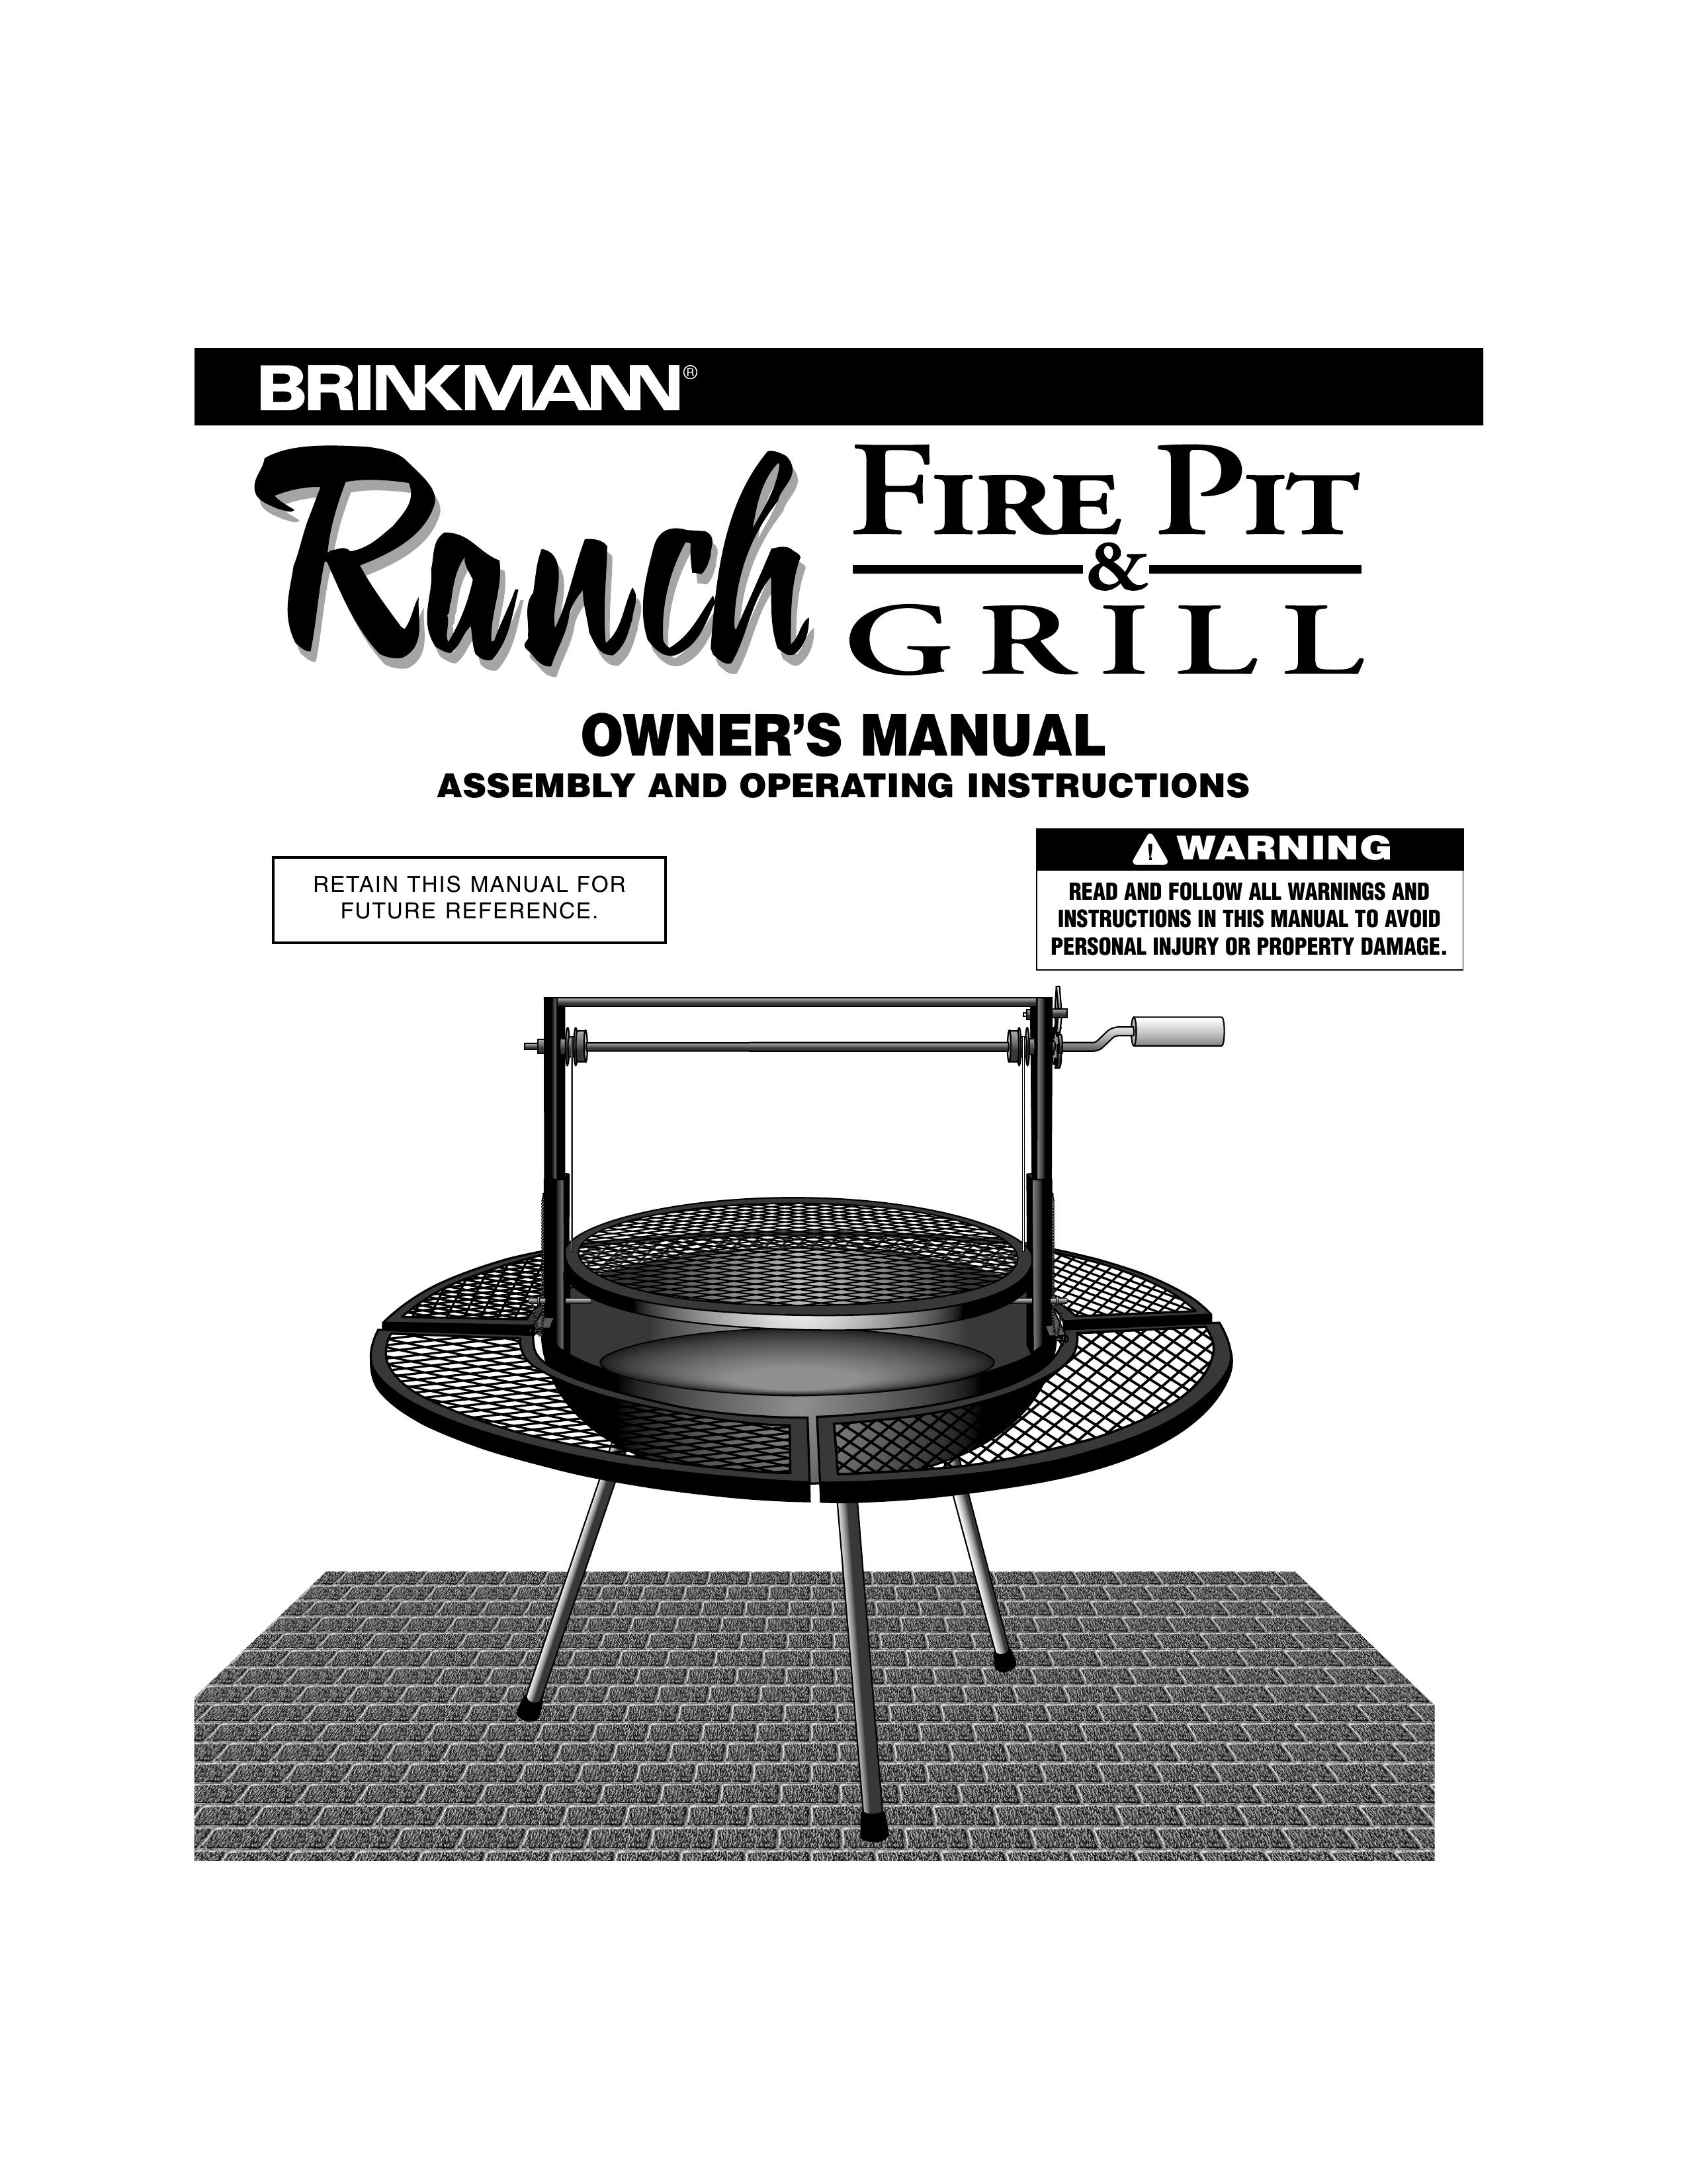 Brinkmann Fire Pit & Grill Fire Pit User Manual